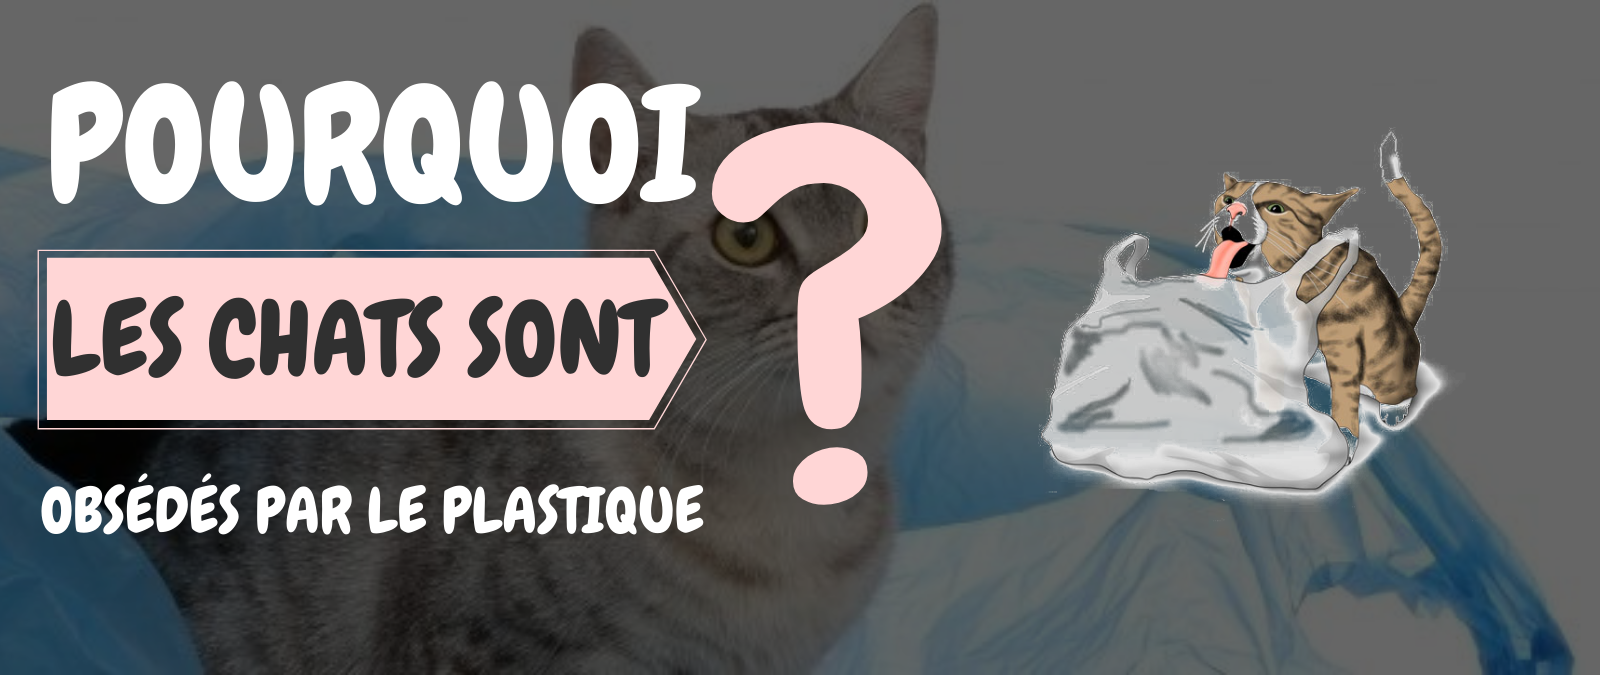 Pourquoi les chats sont obsédés par le plastique ?